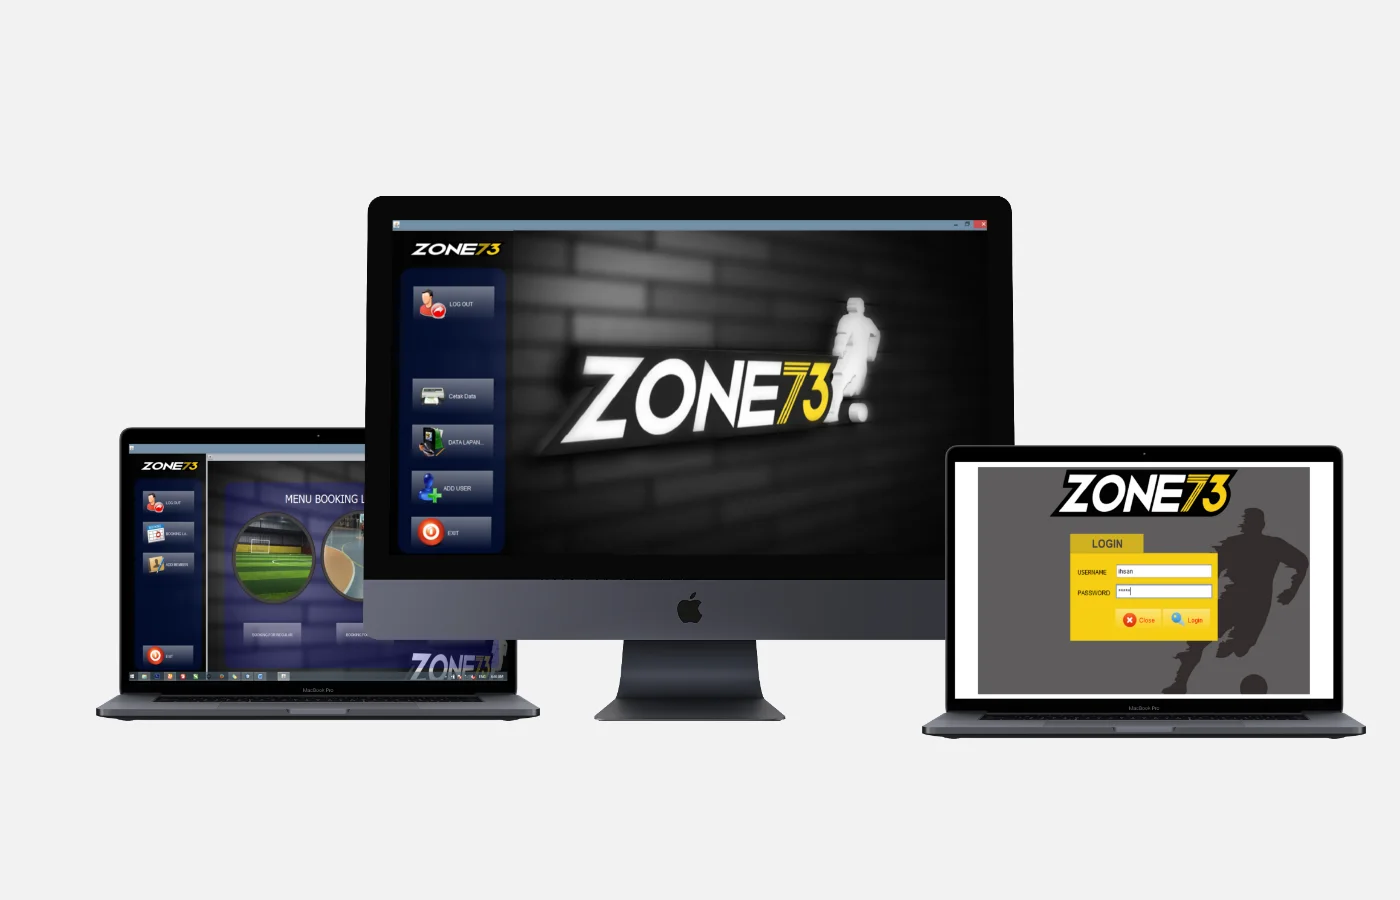 Zone73 App